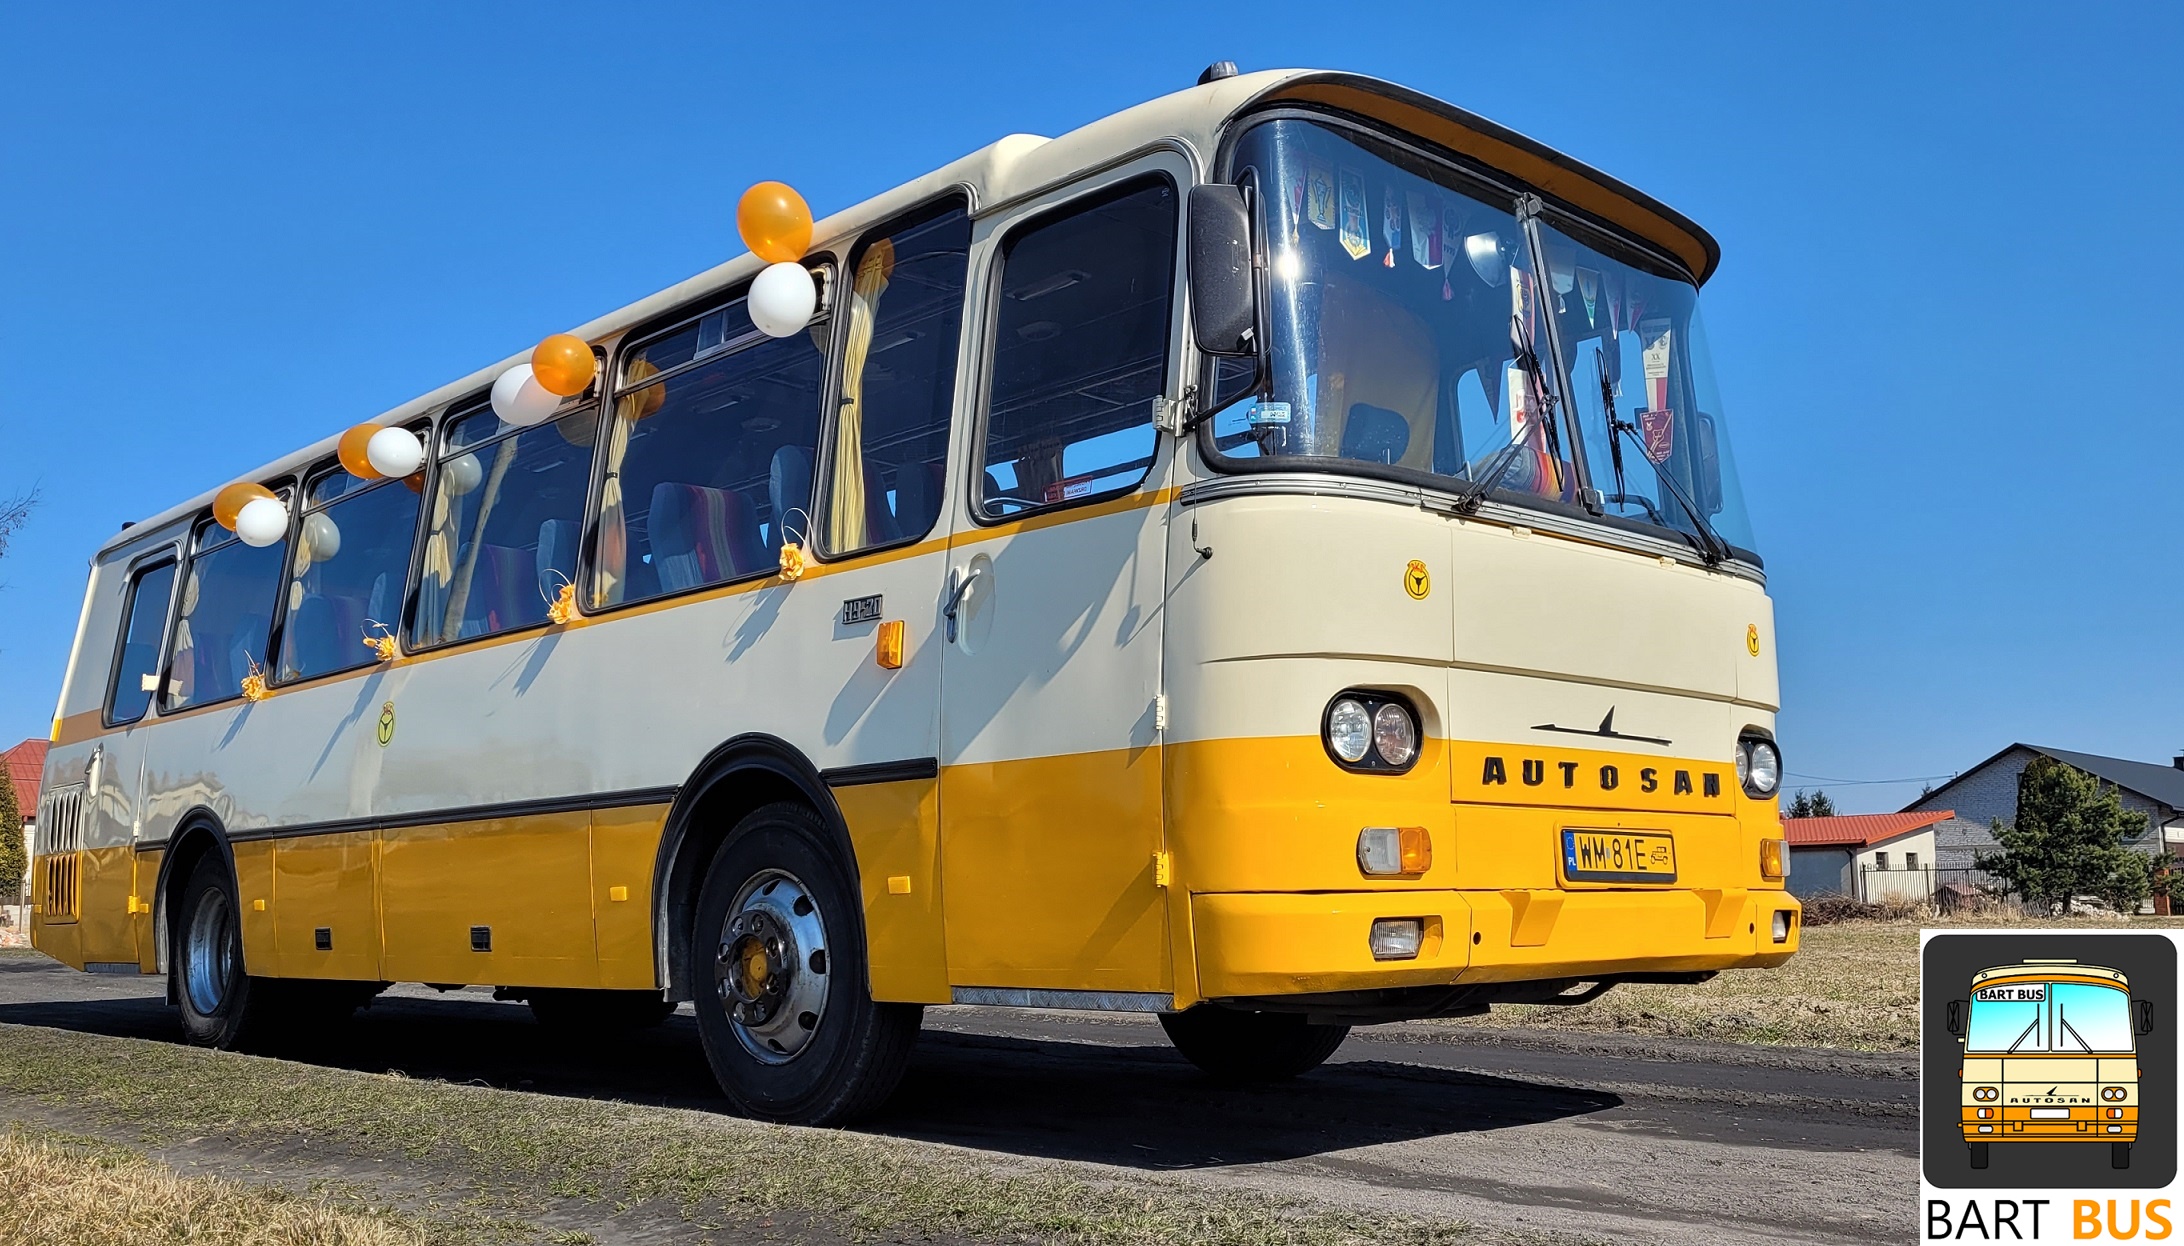 Bart Bus zabytkowy autobus – przewóz gości weselnych retro autobusem